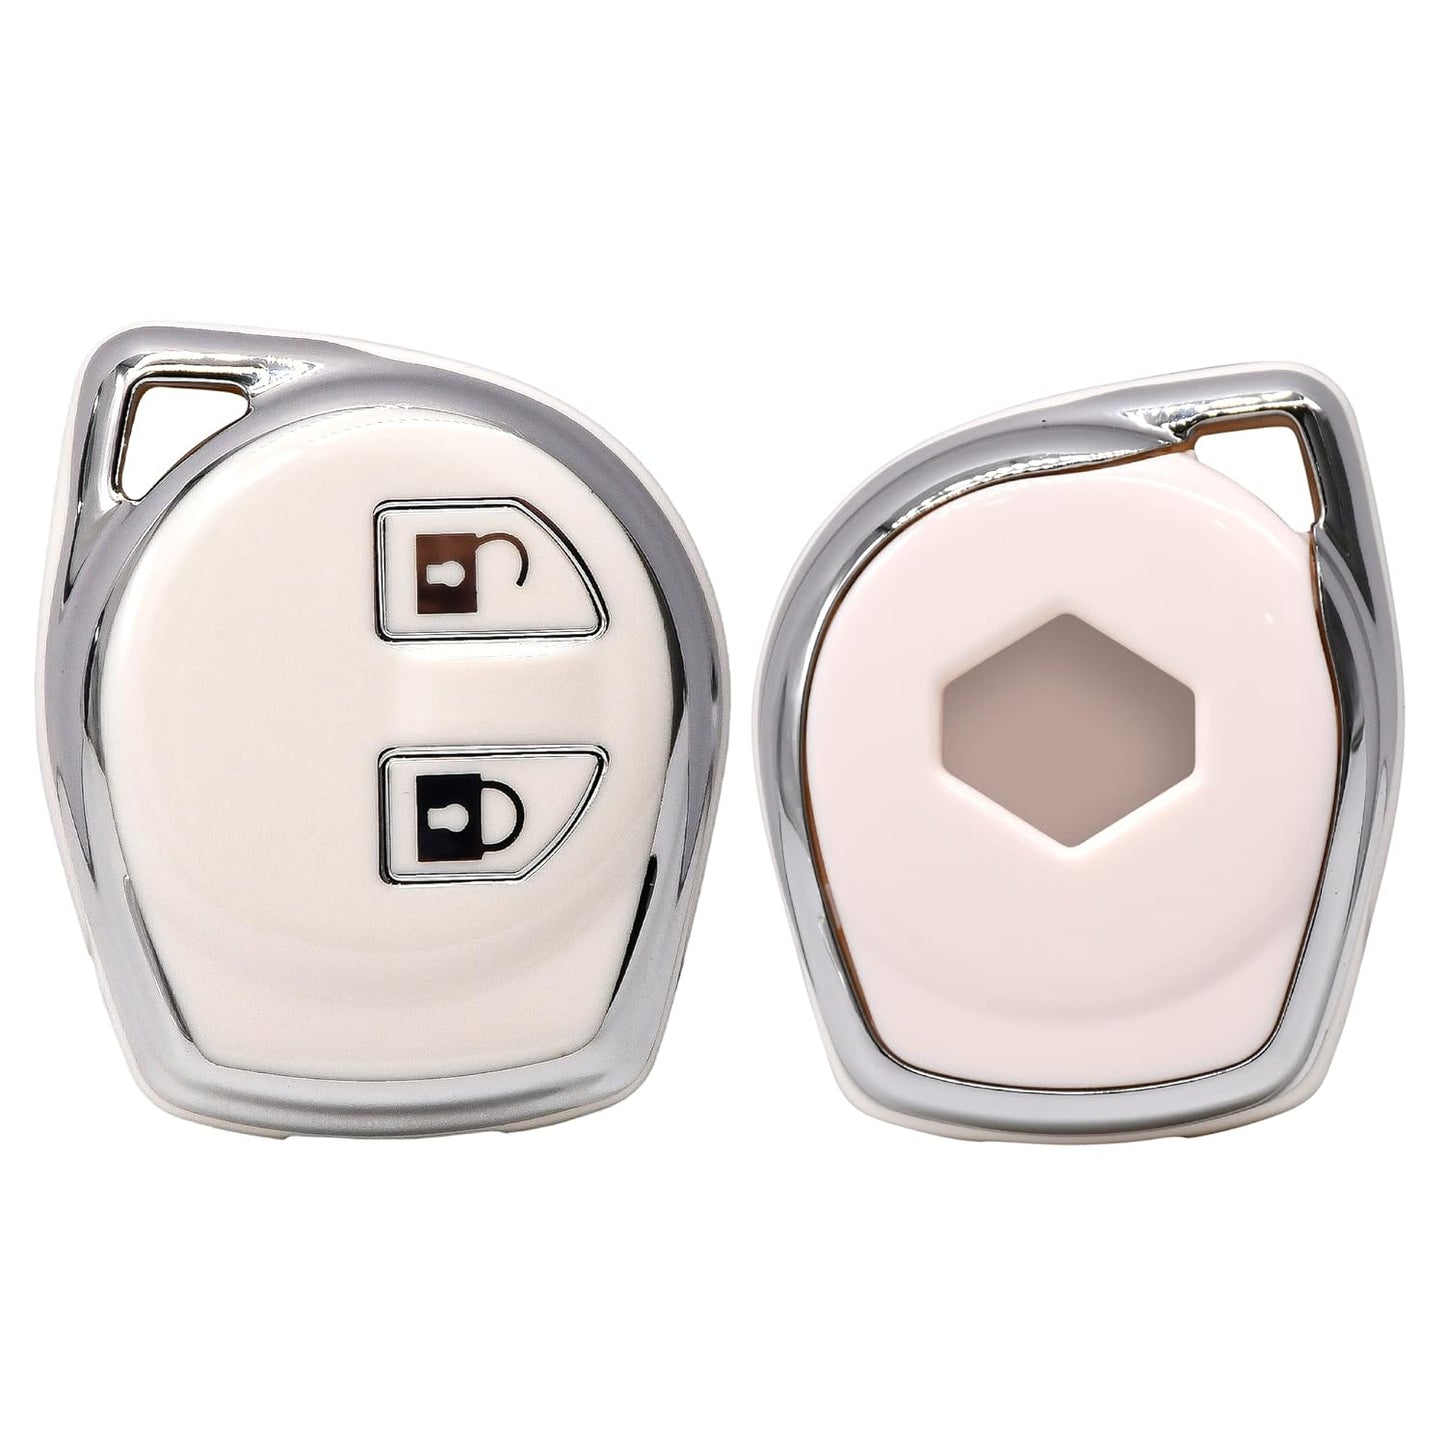 
                  
                    KMH Silver Border TPU Key Cover Compatible for Maruti Suzuki S-Presso, Dzire, Ignis, Alto, Vitara, Brezza, Celerio, Ertiga, Ciaz, S-Cross, Baleno 2 Button Smart Key Cover (Black-White)-TPU SILVER KEY COVER-KMH-CARPLUS
                  
                